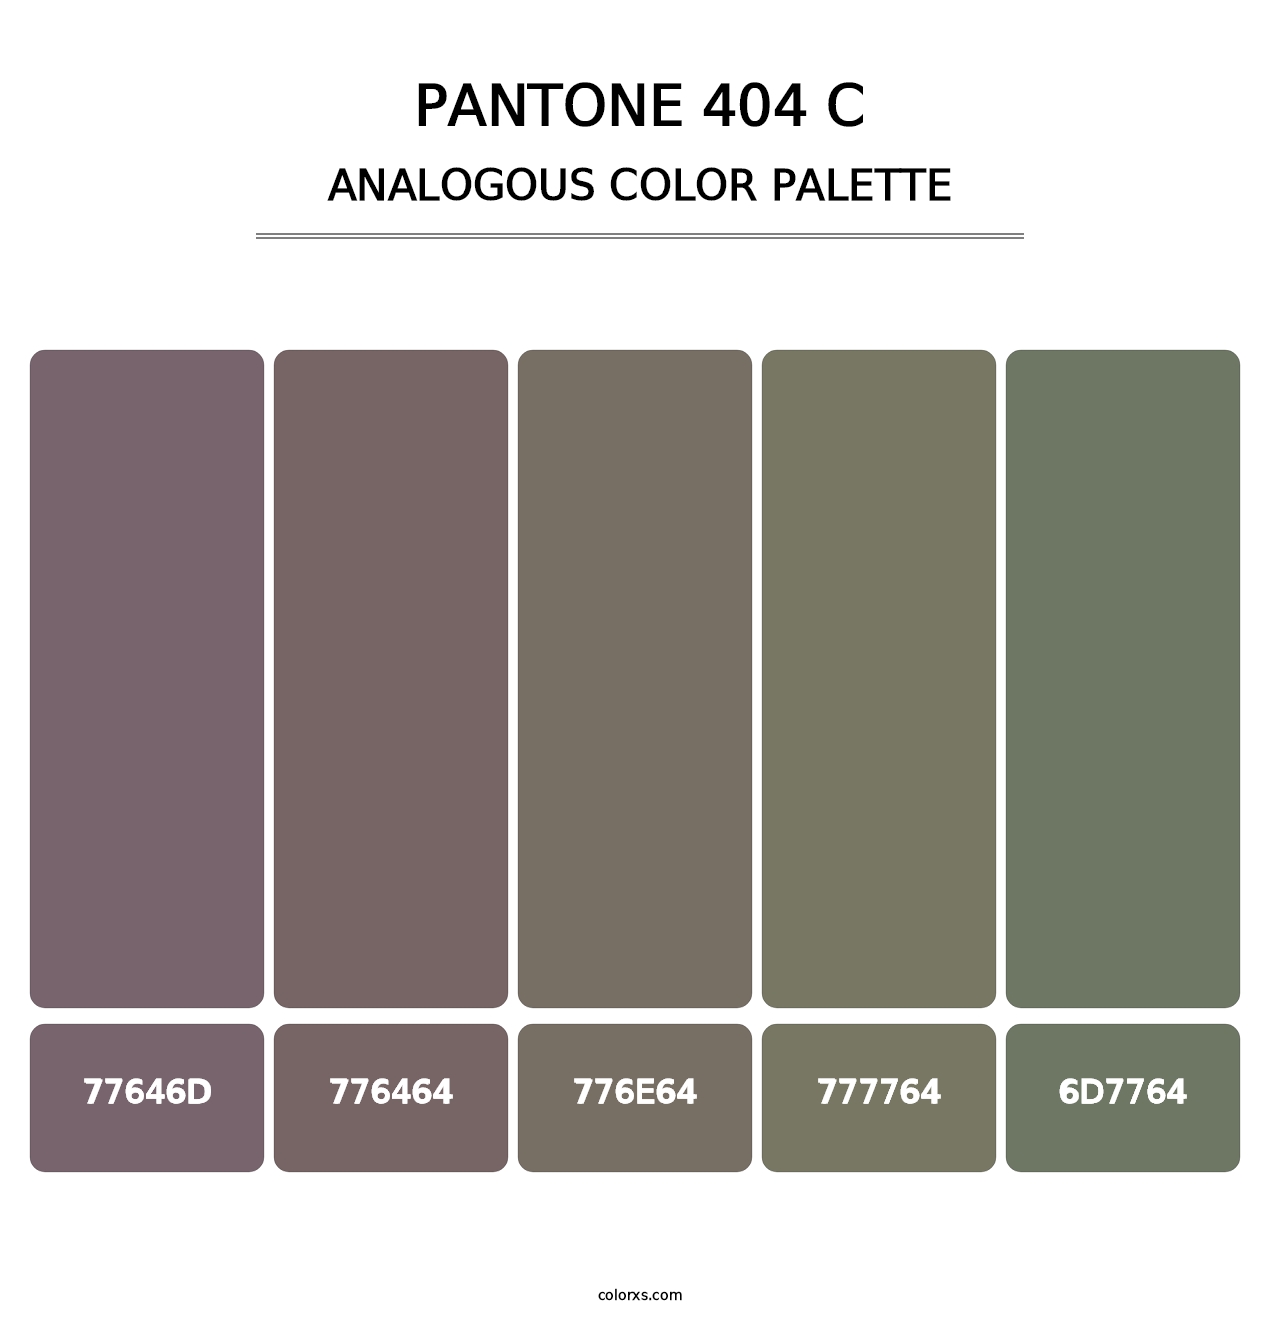 PANTONE 404 C - Analogous Color Palette